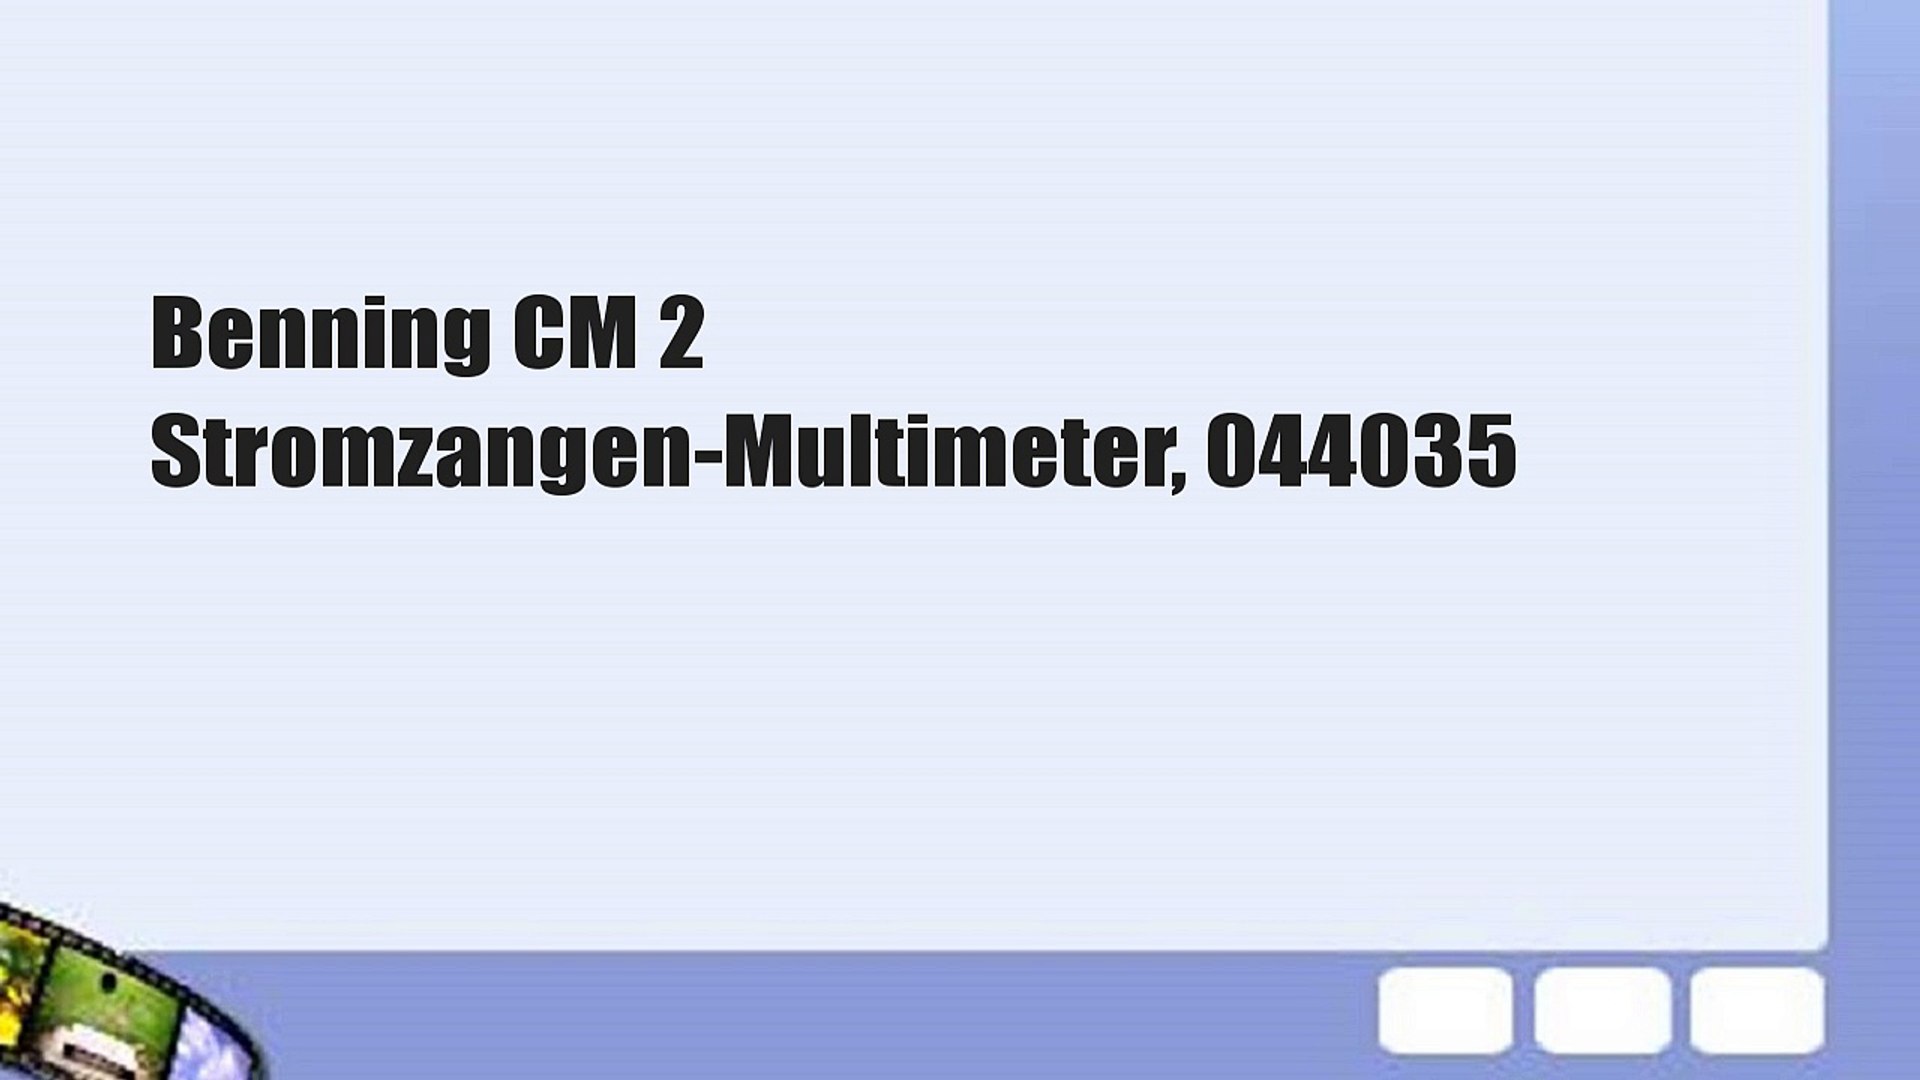 Benning CM 2 Stromzangen-Multimeter, 044035 - video Dailymotion